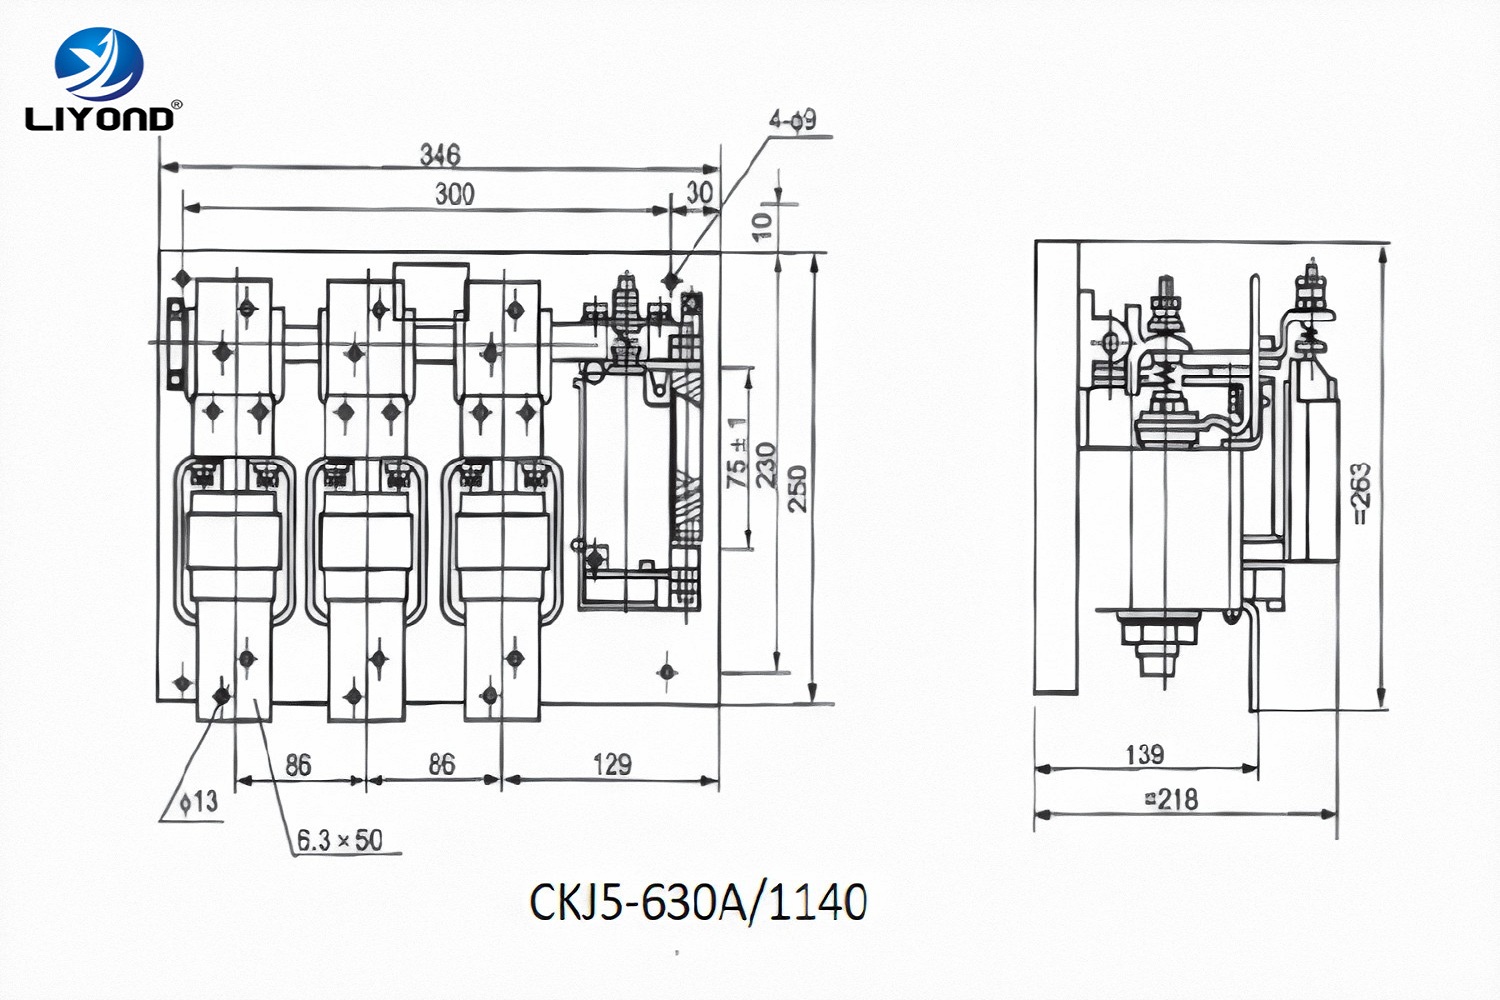 AC L.V. CKJ5 Vacuum Contactor drawing-3